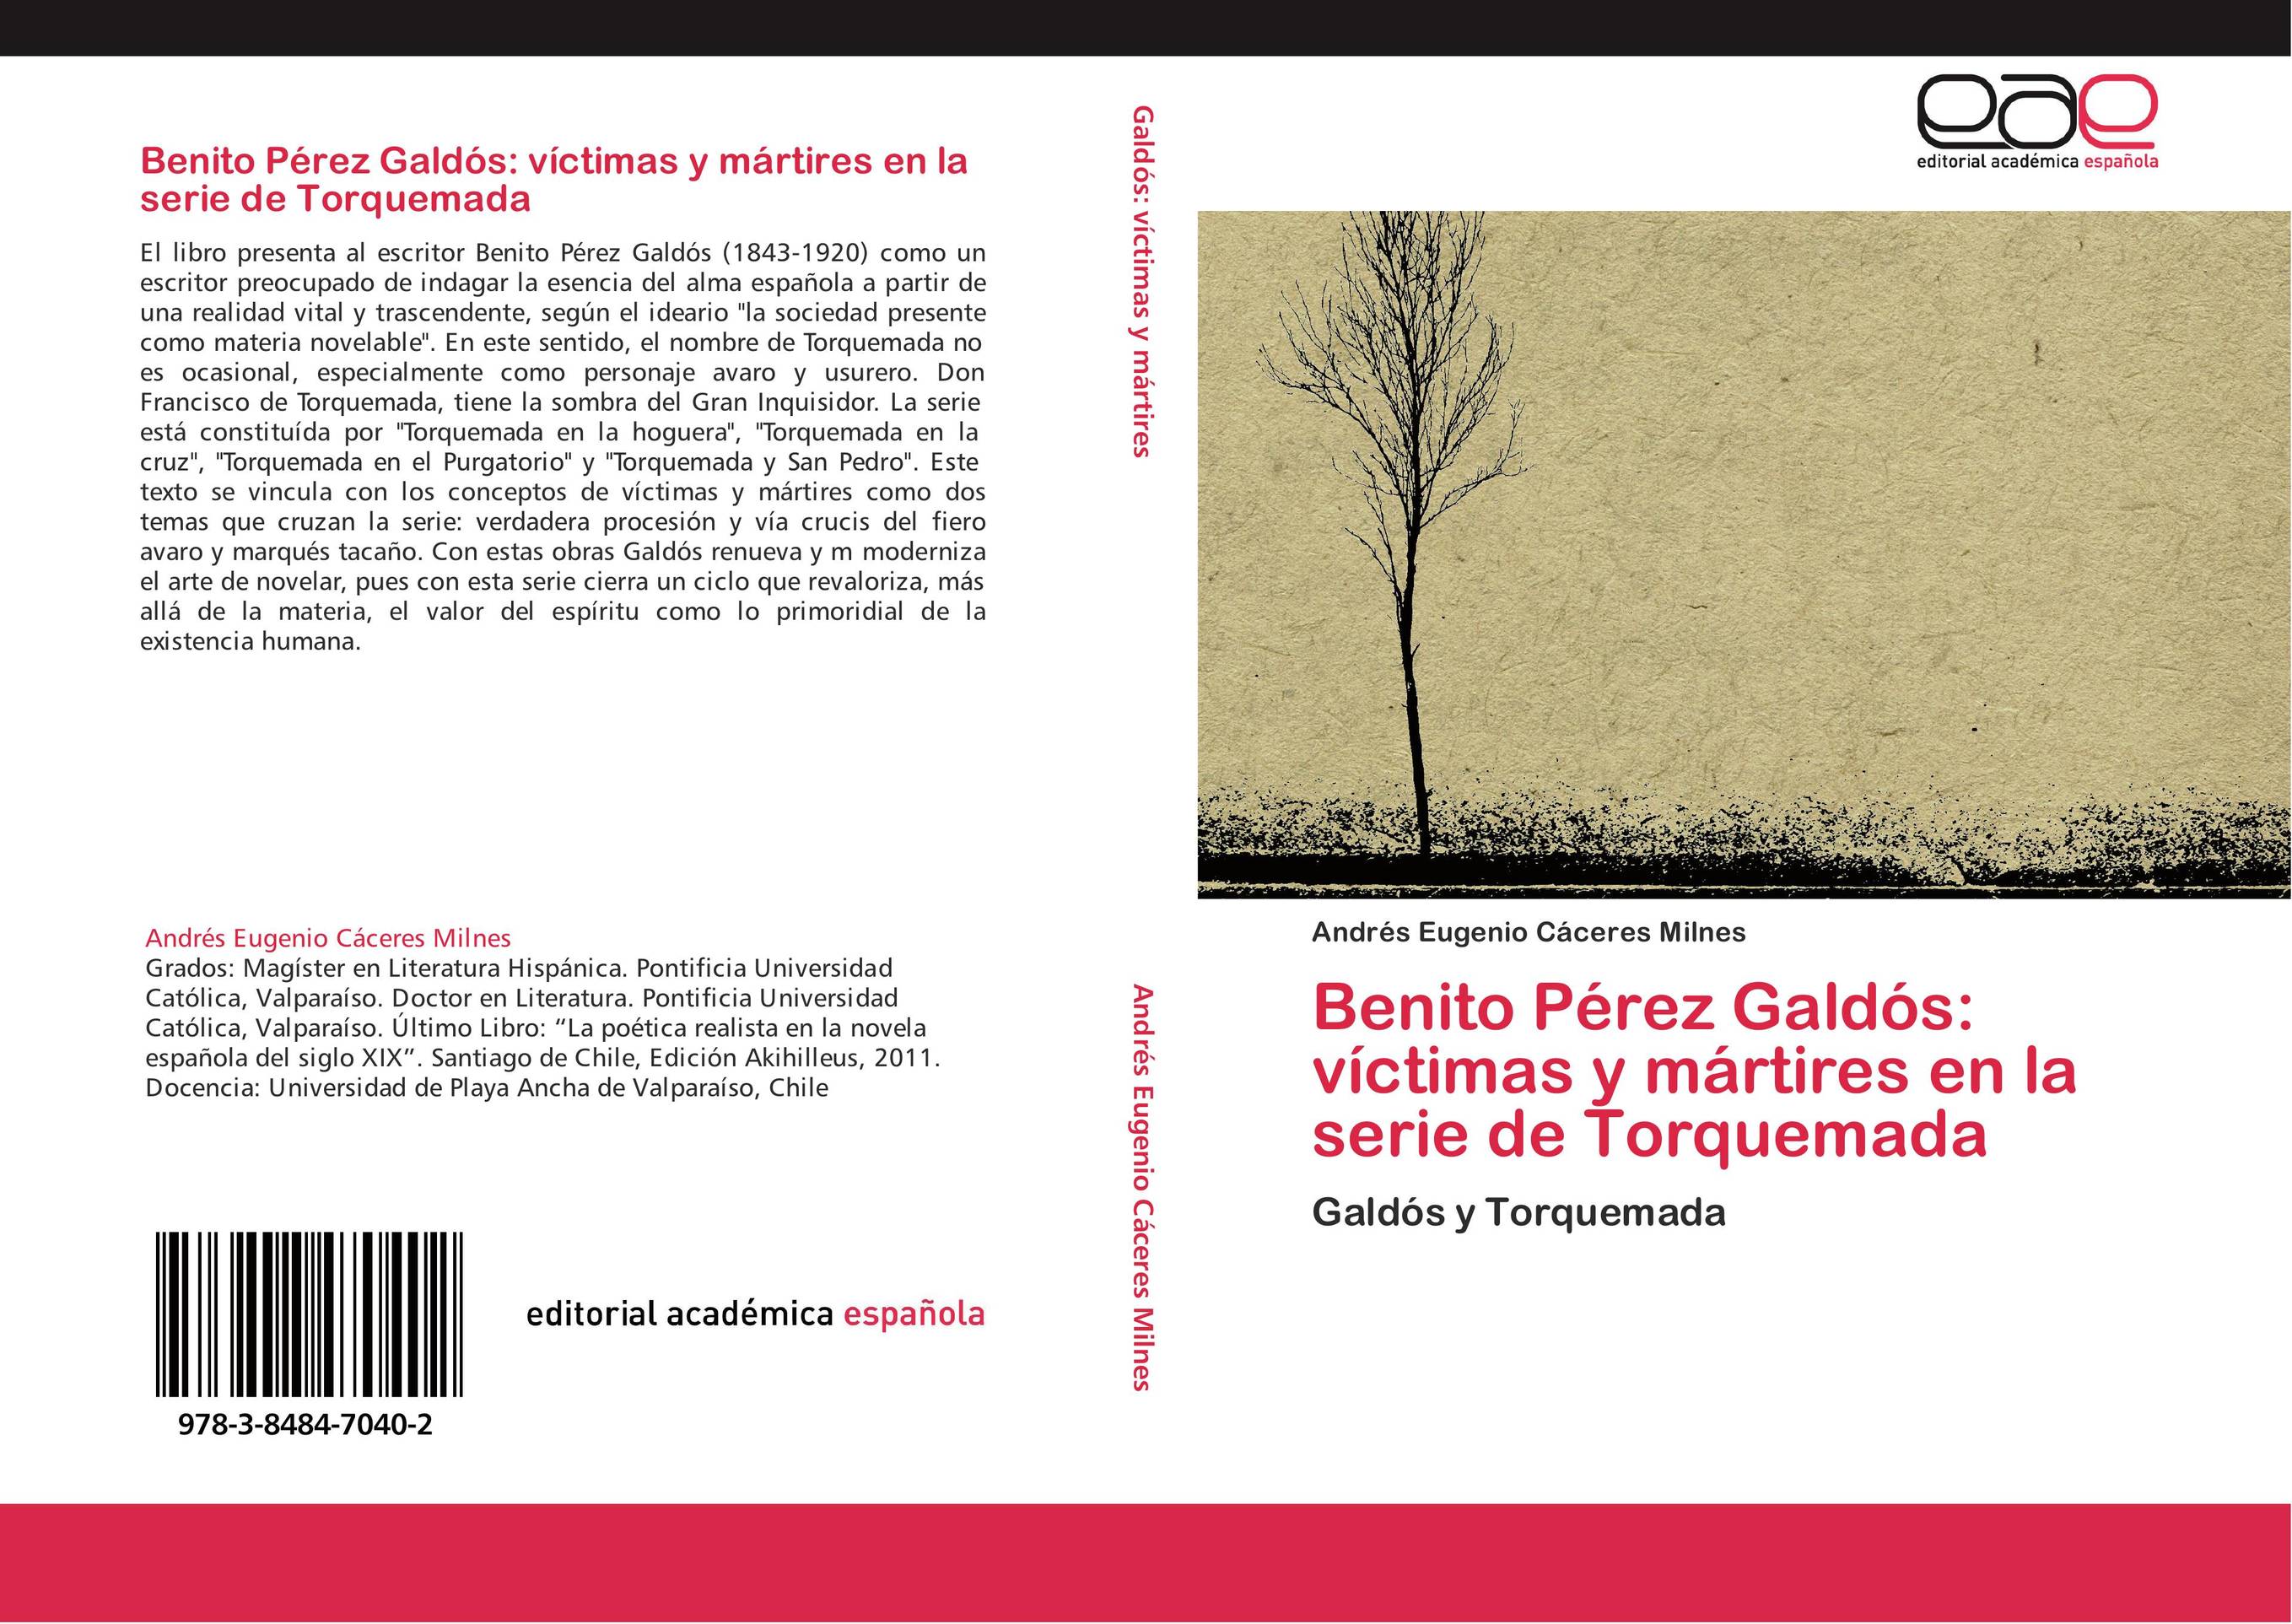 Benito Pérez Galdós: víctimas y mártires en la serie de Torquemada